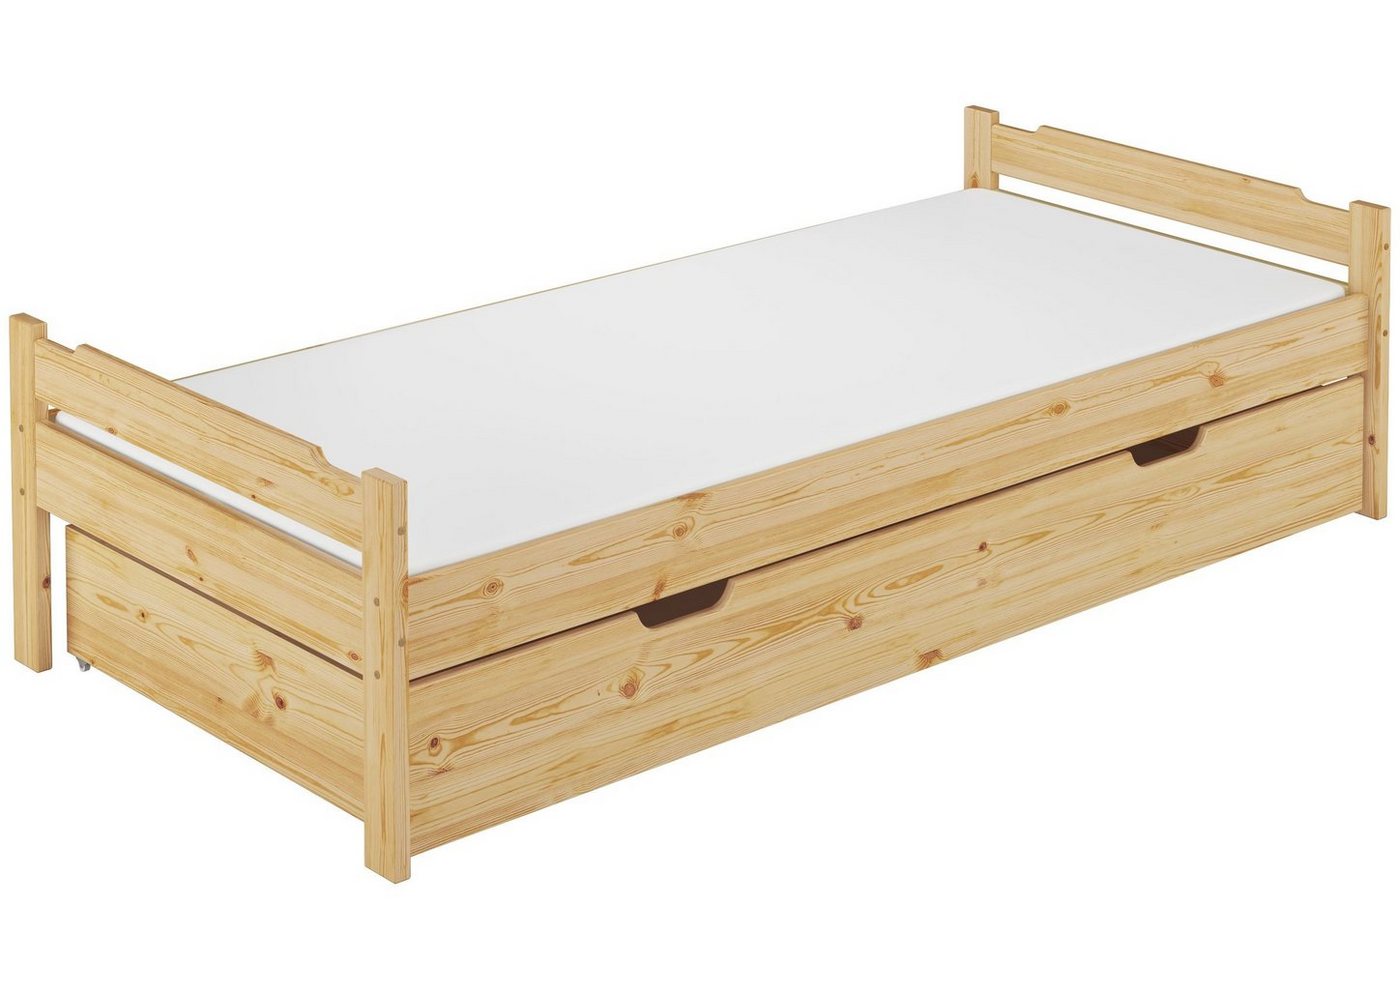 ERST-HOLZ Bett Kinderbett 80x200 Kiefer massiv mit Rost, Matratze und Bettkasten, Kieferfarblos lackiert von ERST-HOLZ